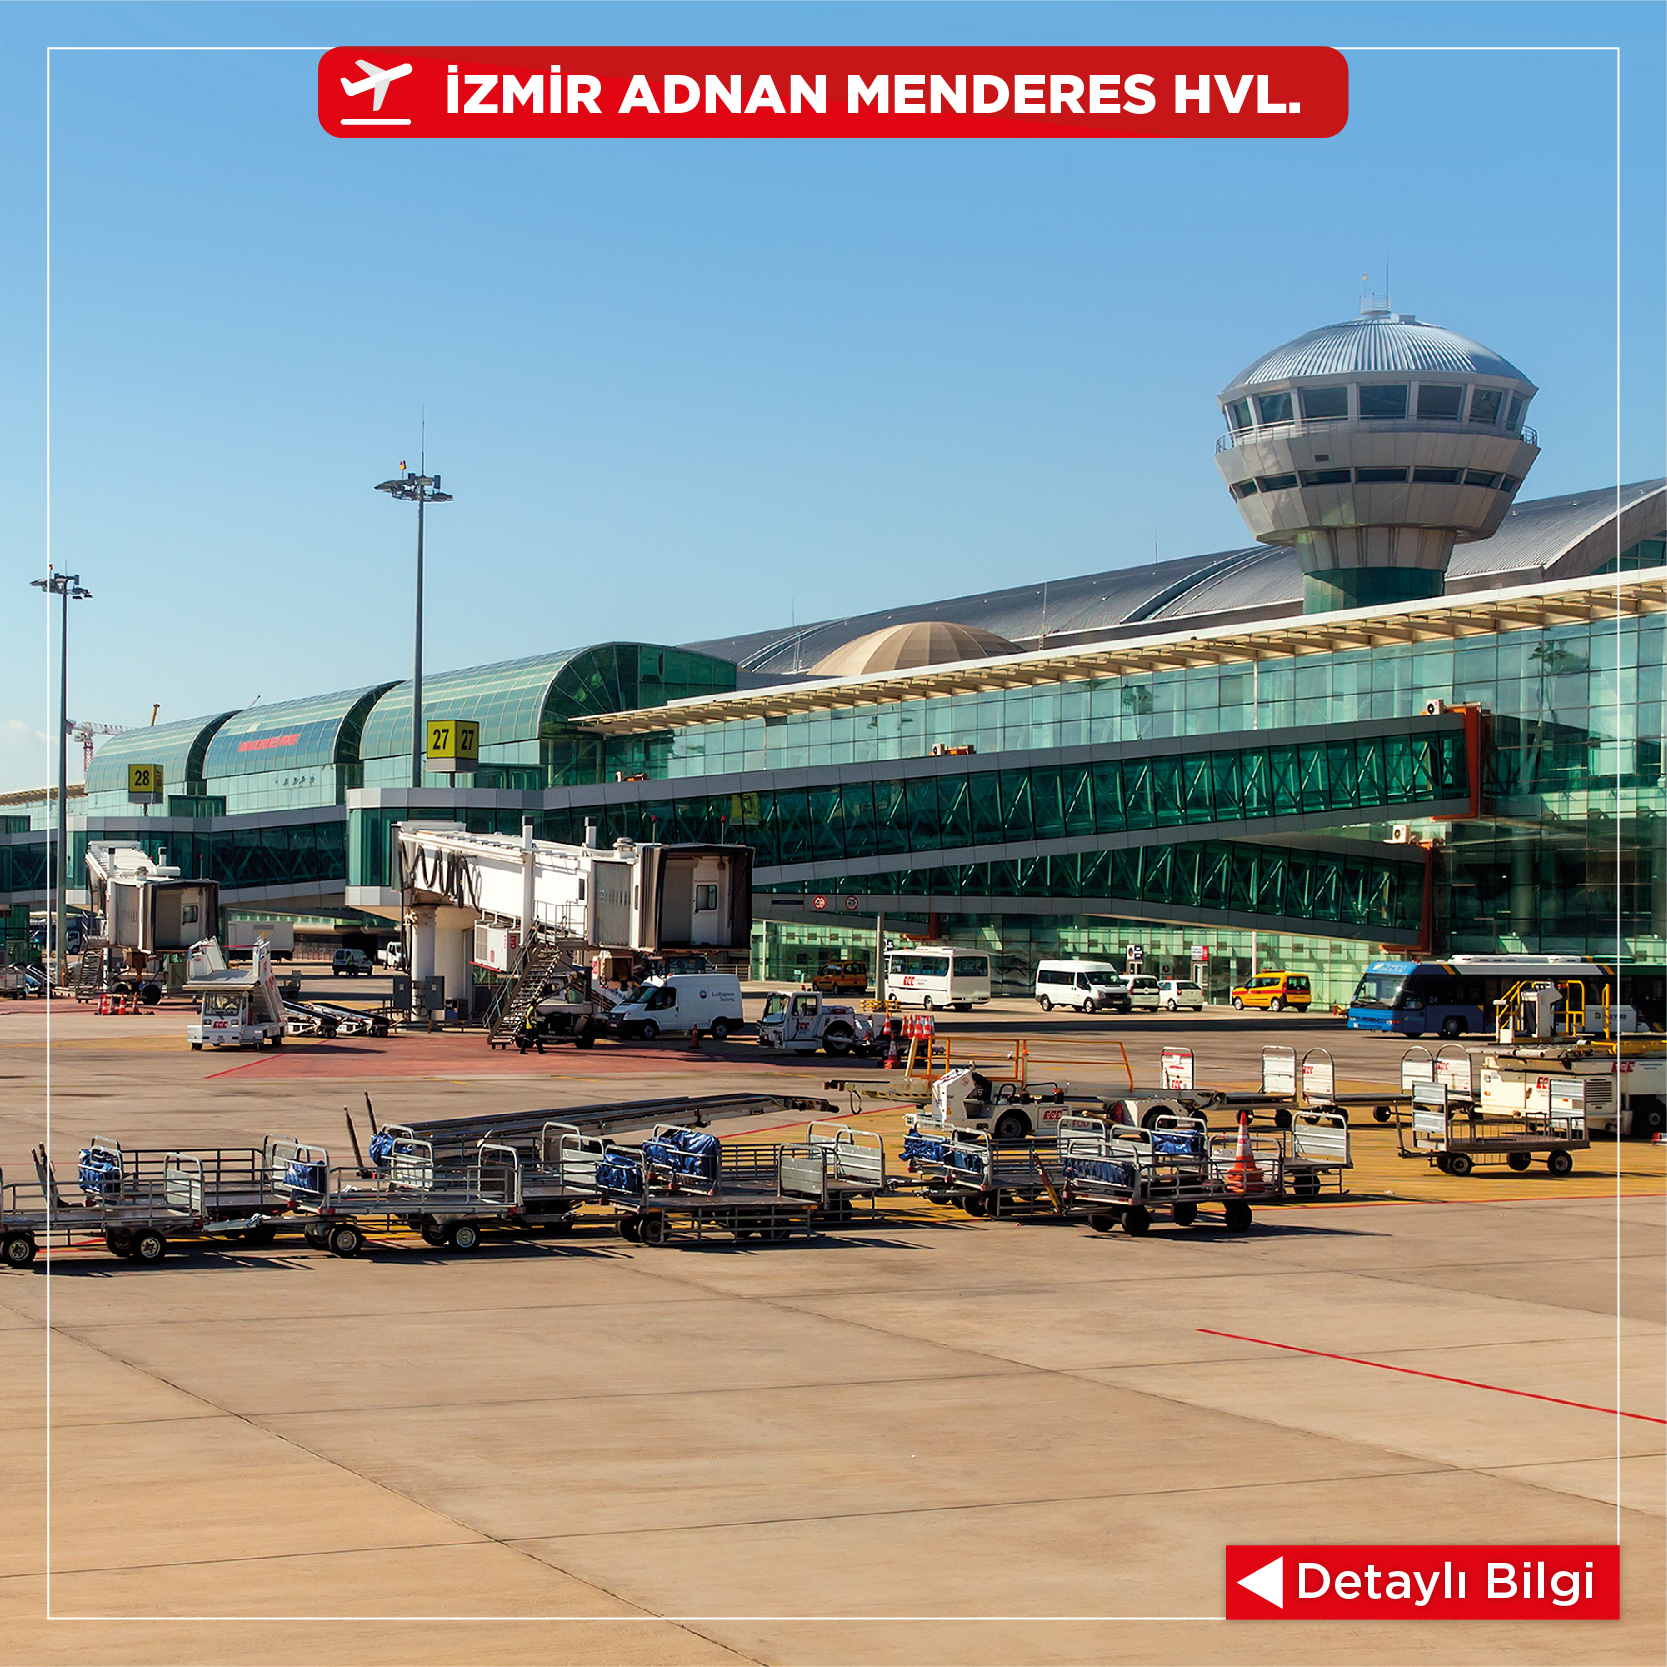 İzmir Airport Car Rental